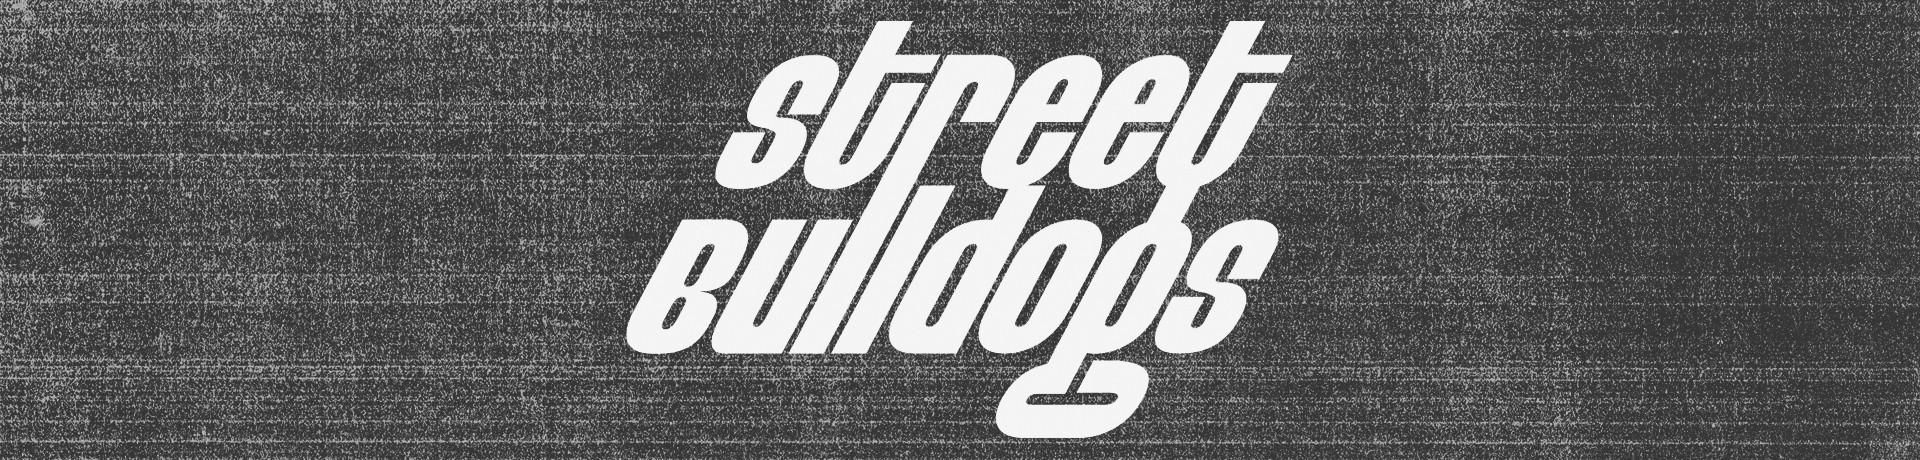 Street Bulldogs - Bulldog [Camisa Pólo]